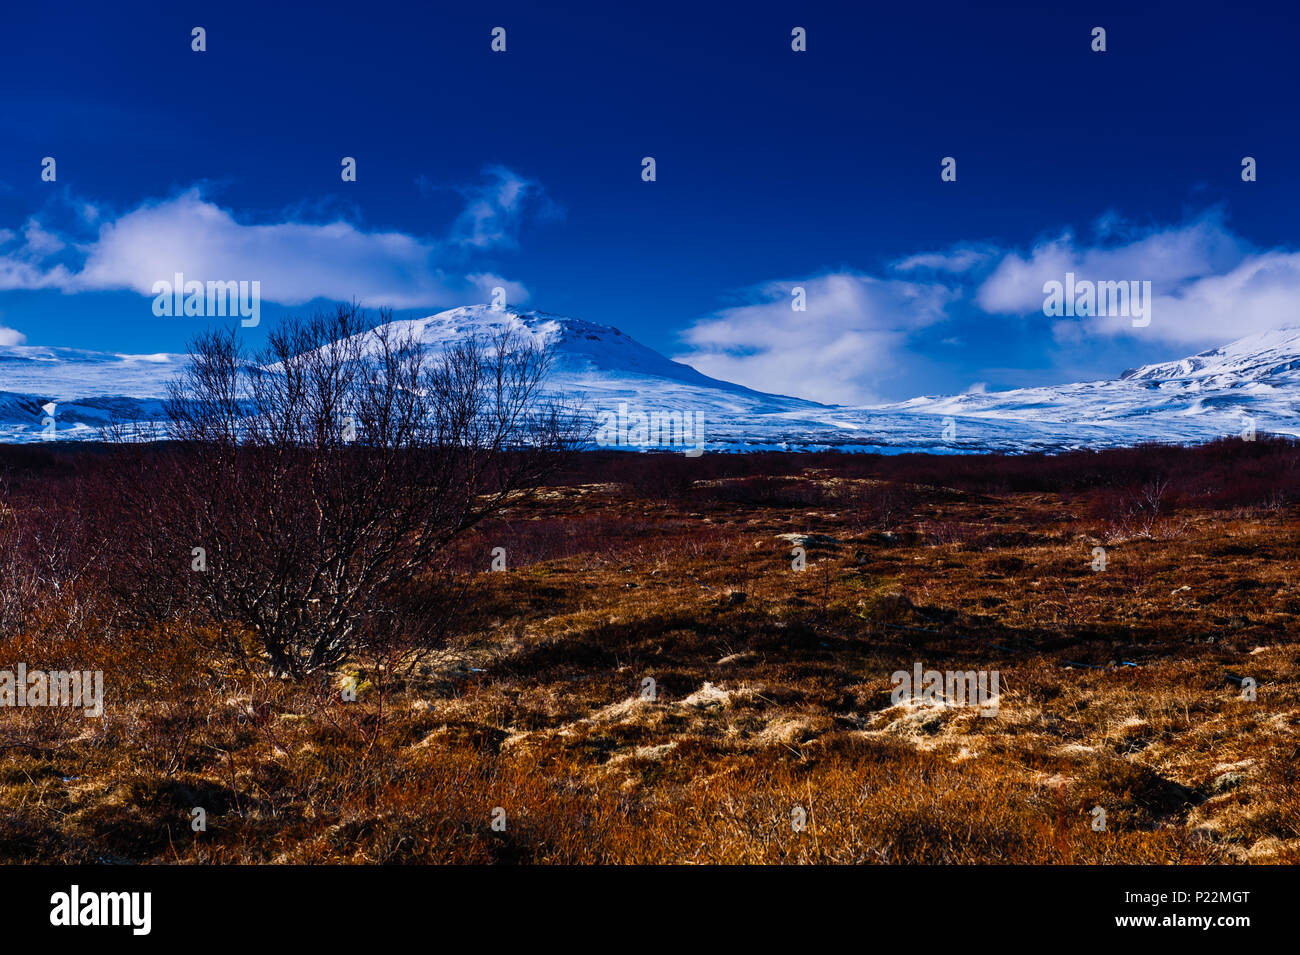 Colorato ad alta immagine contrasty copre il paesaggio desolato di icelands famoso parco nazionale Thingvellir, aprile 2018 Foto Stock